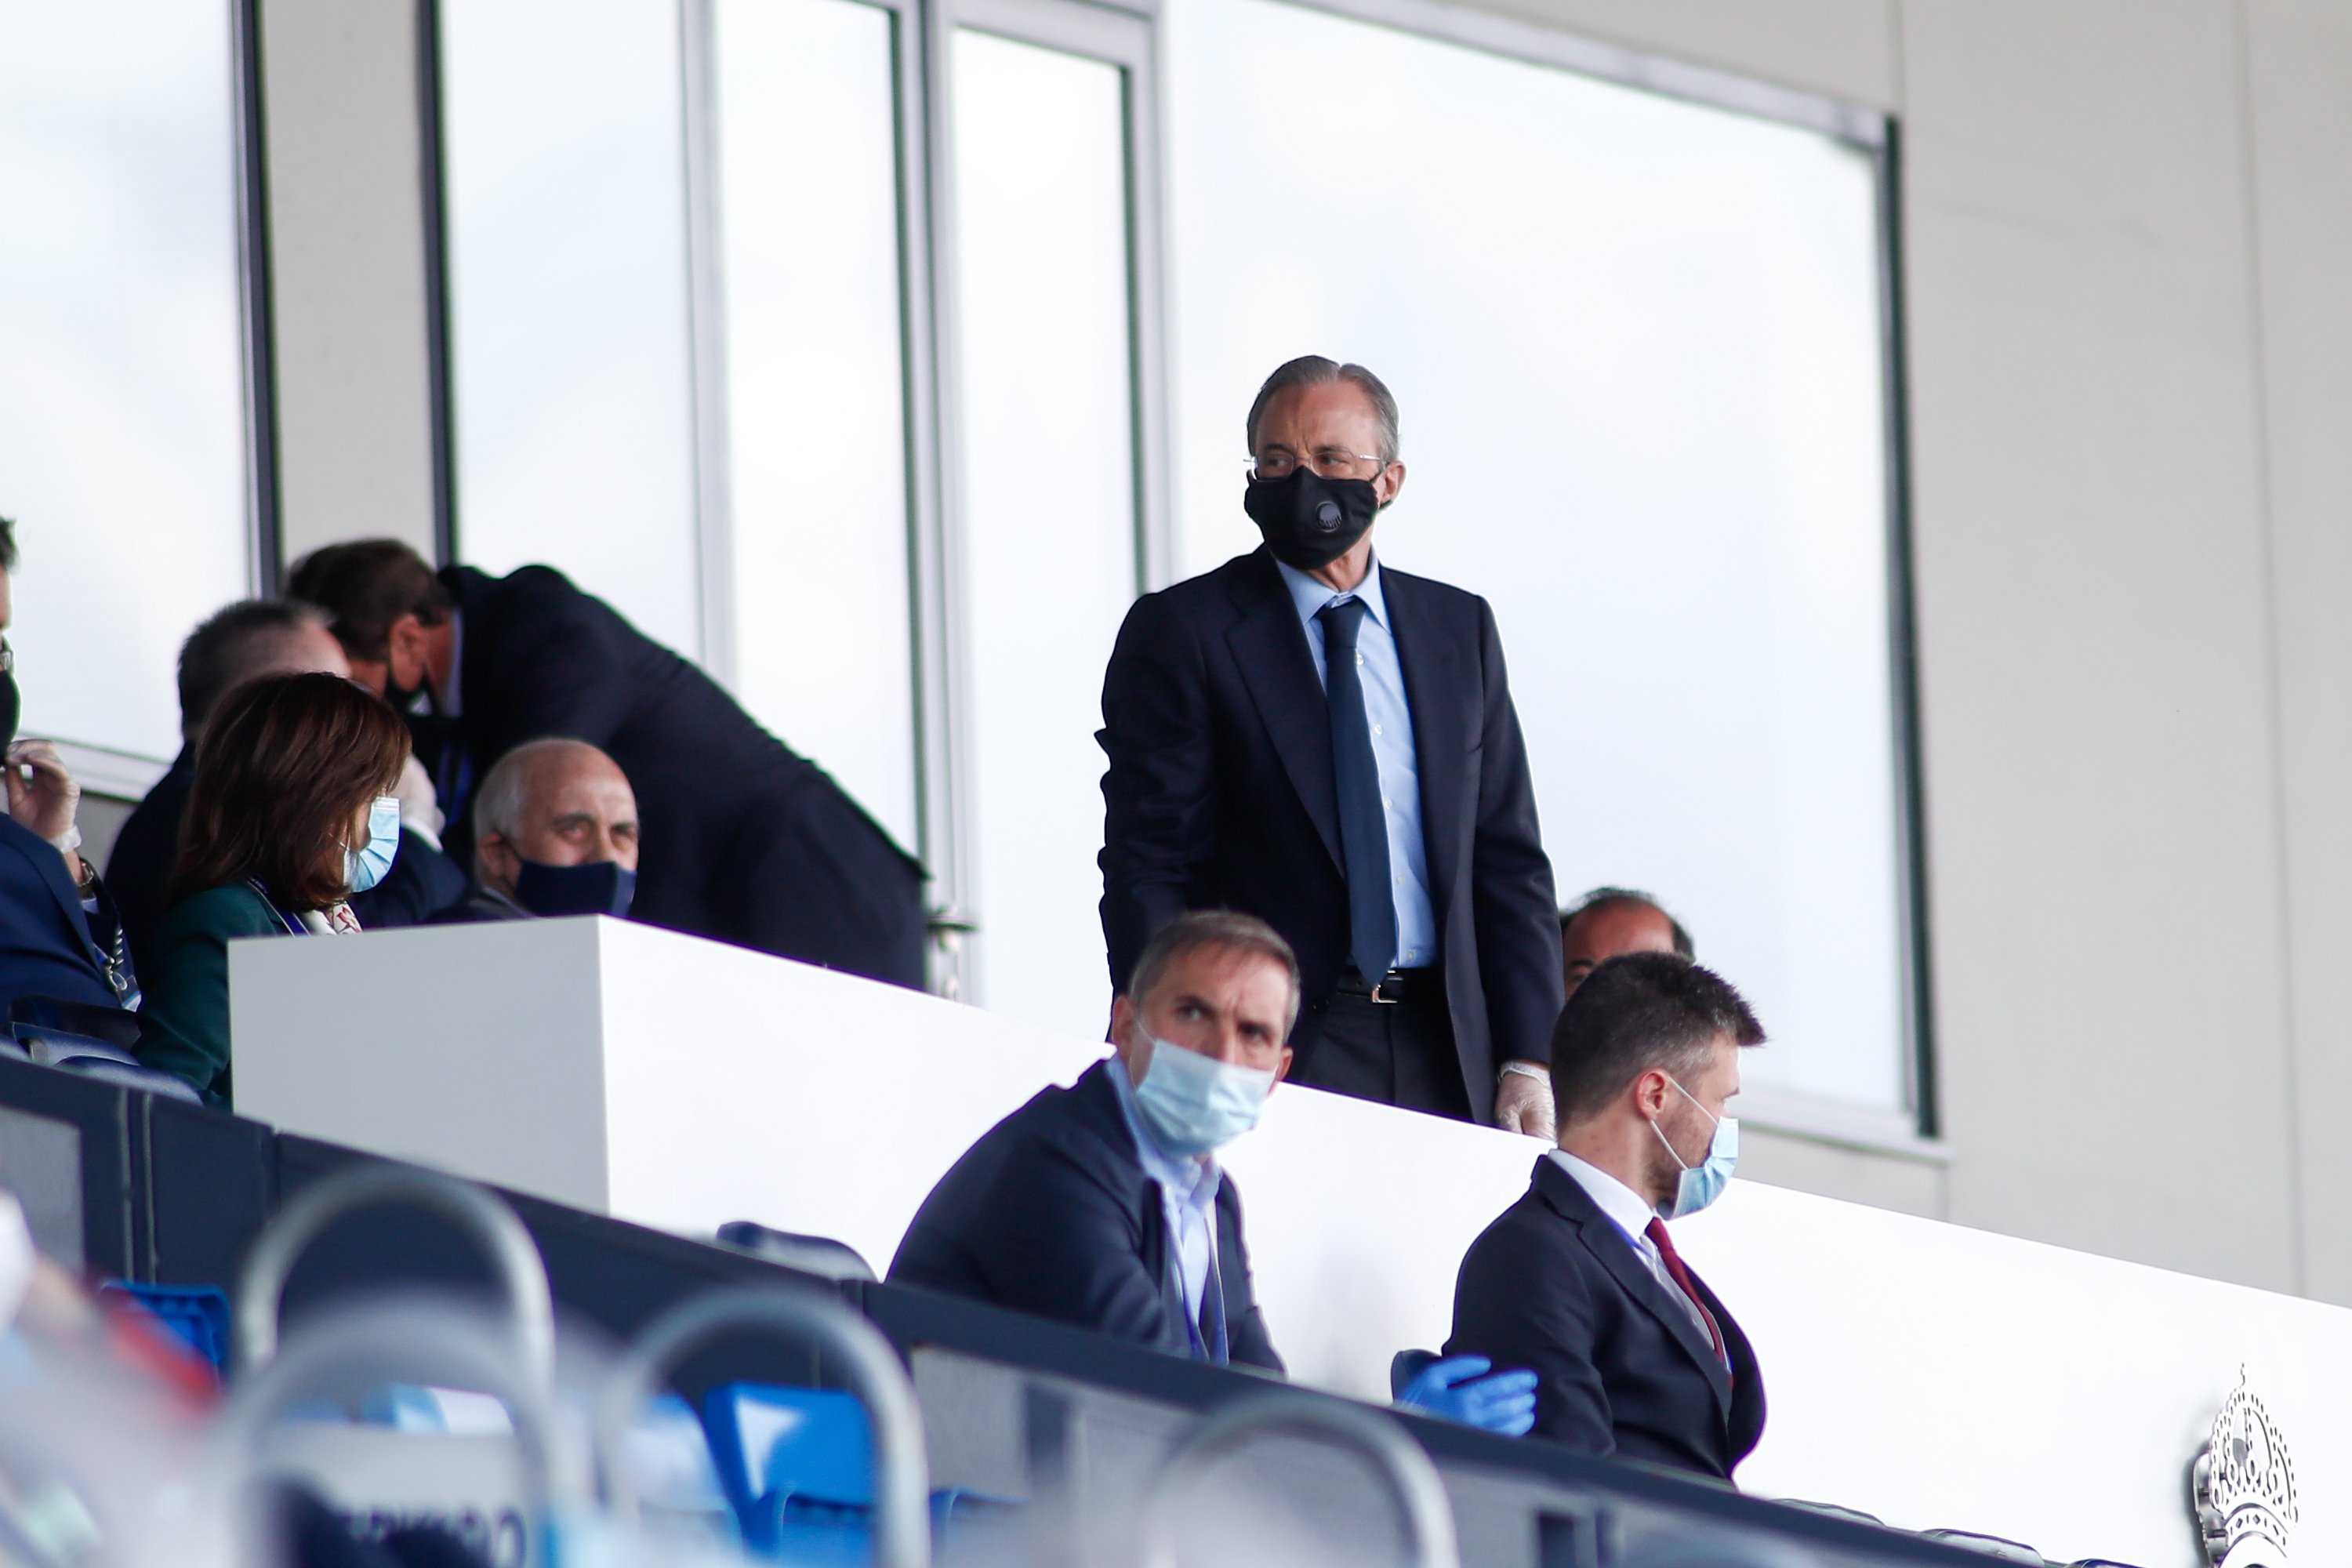 Flroentino Pérez pilla al jugador del Real Madrid que lleva 5 meses negociando con el enemigo